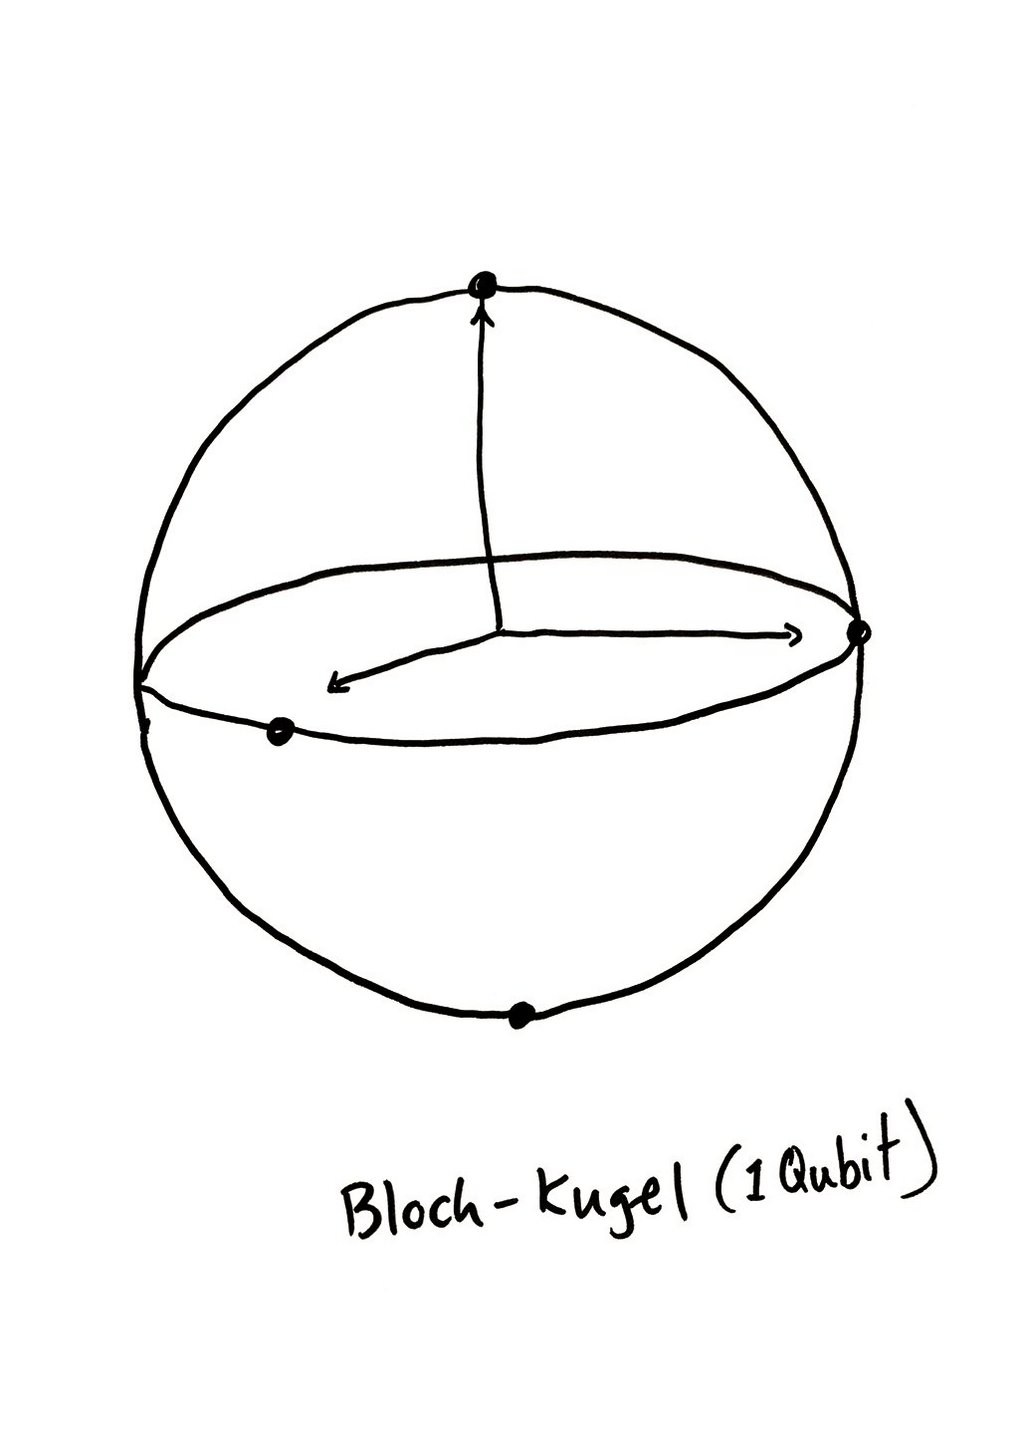 Geometrische Zeichnung einer Block Kugel, die ein Qubit darstellt.